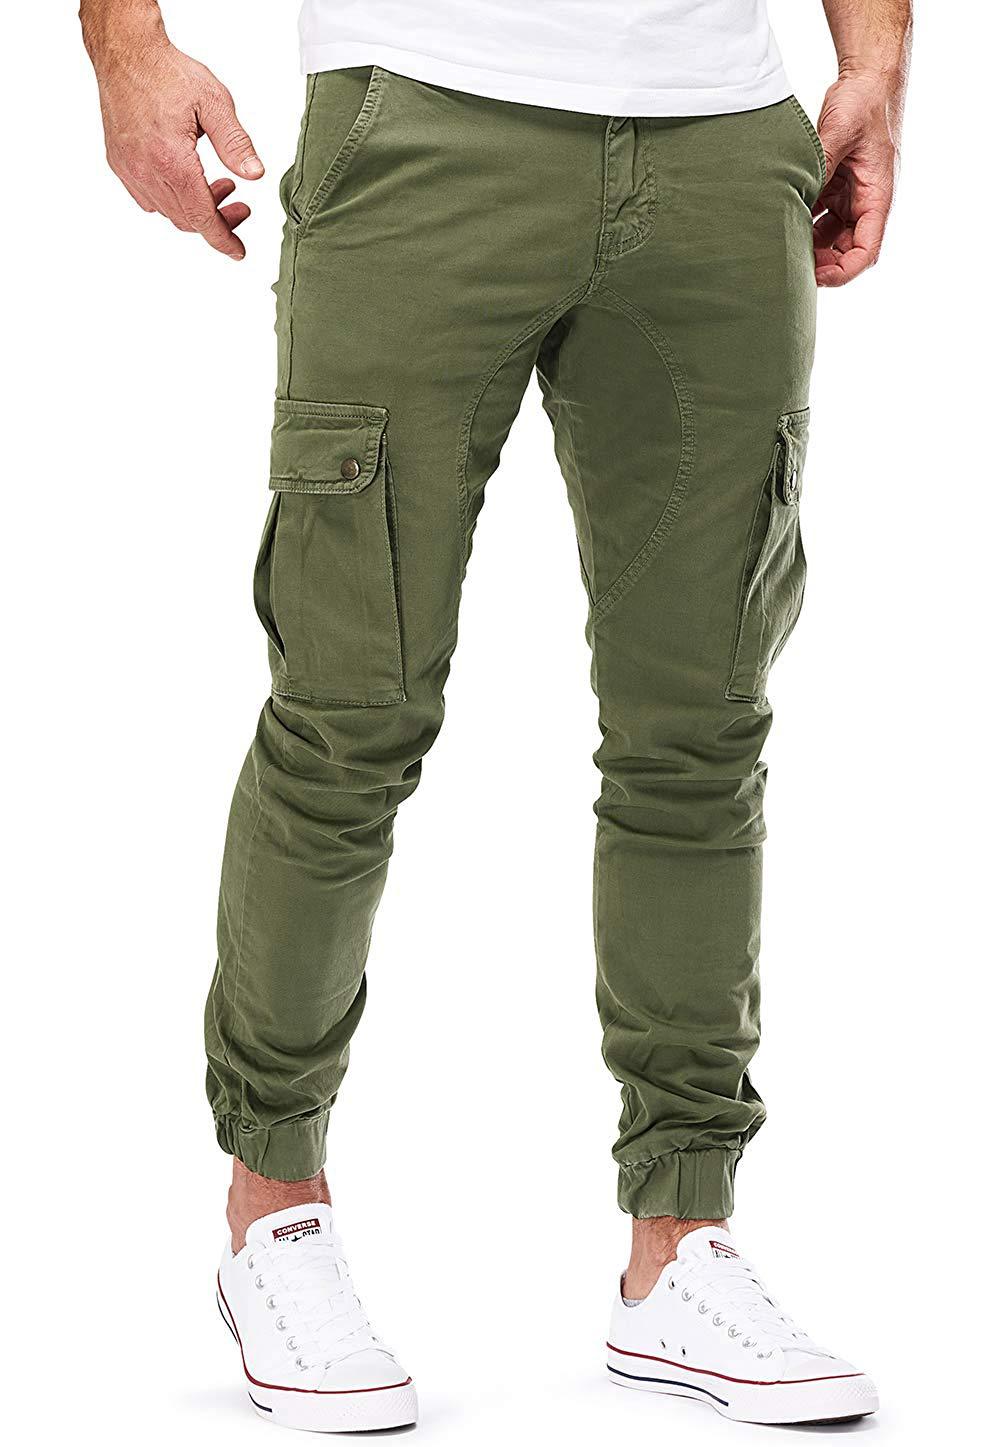 Casual Men Pocket Long Pants-Men Pants-Army Green-M-Free Shipping at meselling99